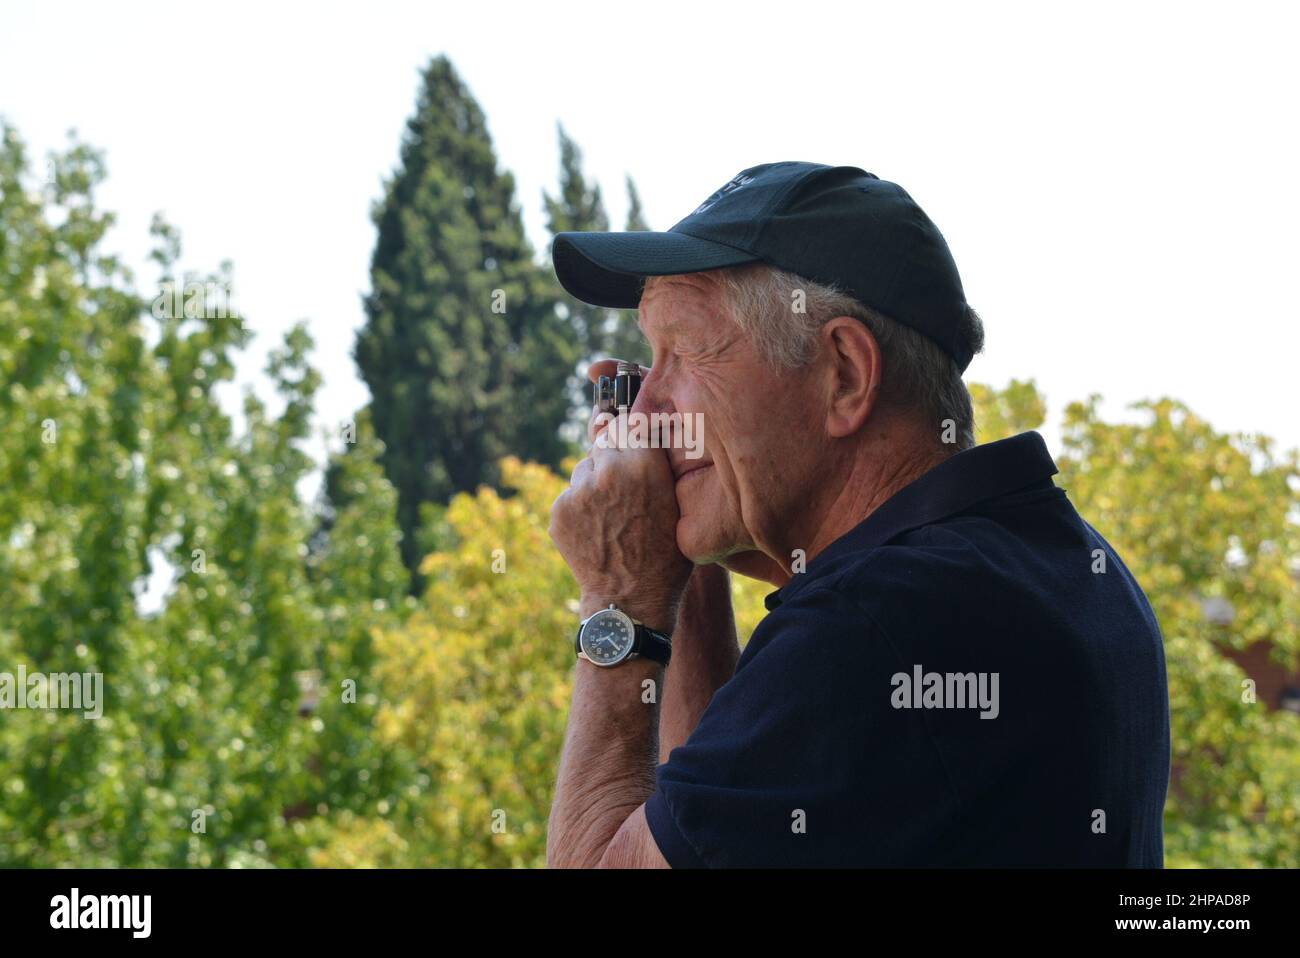 Älterer Fotograf mit einer Miniatur-Filmkamera auf Augenhöhe. Blaues Hemd mit blauer Mütze auf einem weichen Hintergrund von grünen Bäumen. Stockfoto